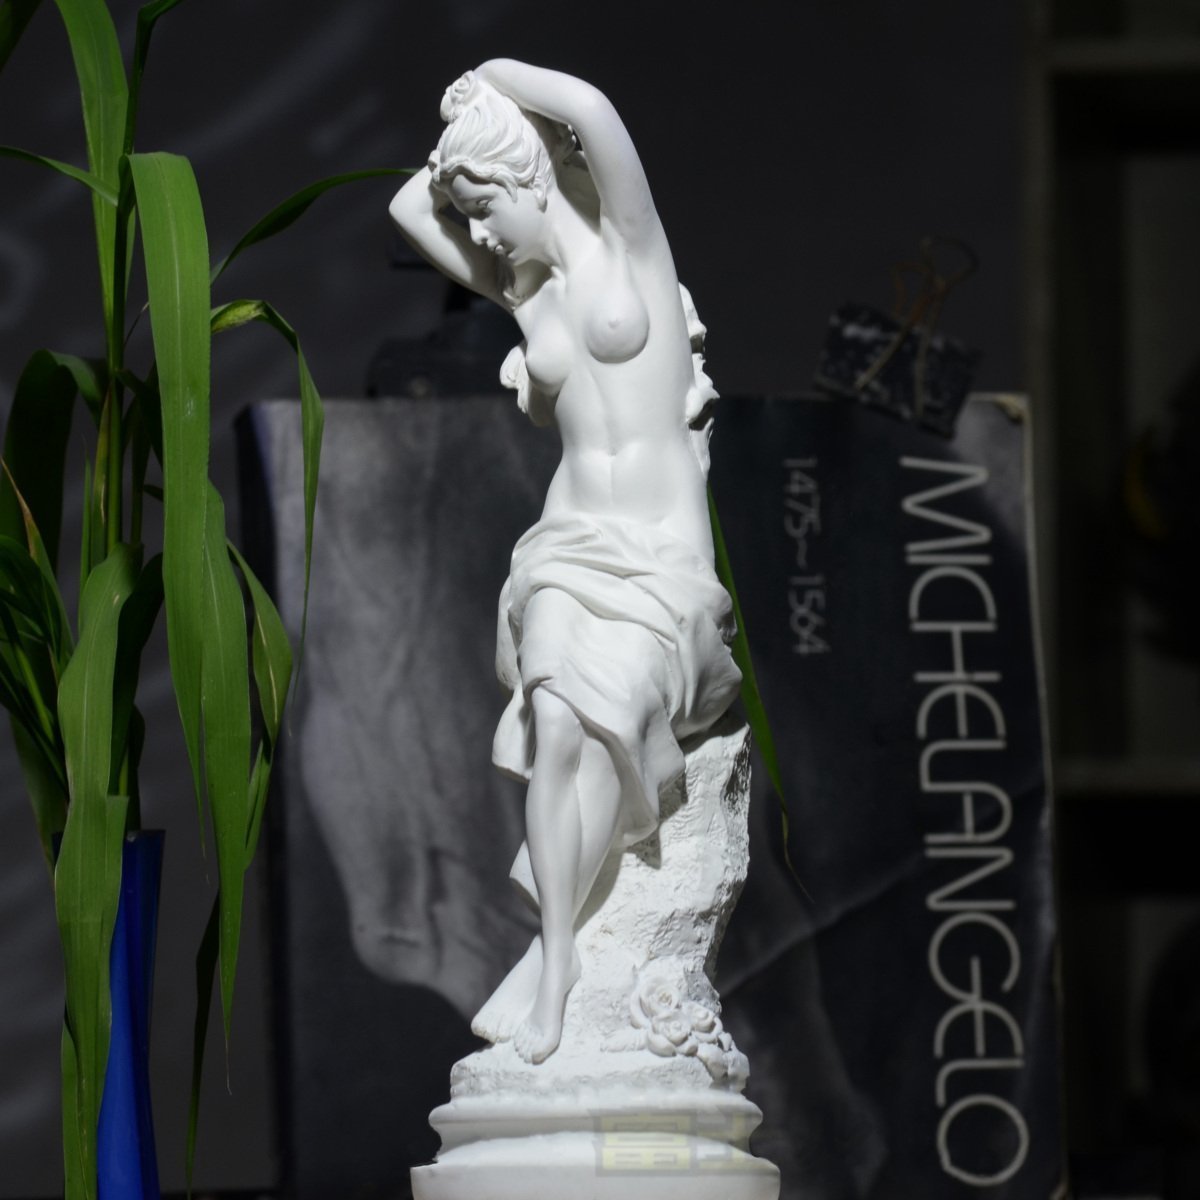 Aphrodite, प्रेम की ग्रीक देवी, सौंदर्य और सेक्स. मूर्तिकला, मूर्ति, पश्चिमी सामान, वस्तु, आभूषण, मूर्ति, आंतरिक भाग, राल, हस्तनिर्मित, आंतरिक सहायक उपकरण, आभूषण, पश्चिमी शैली